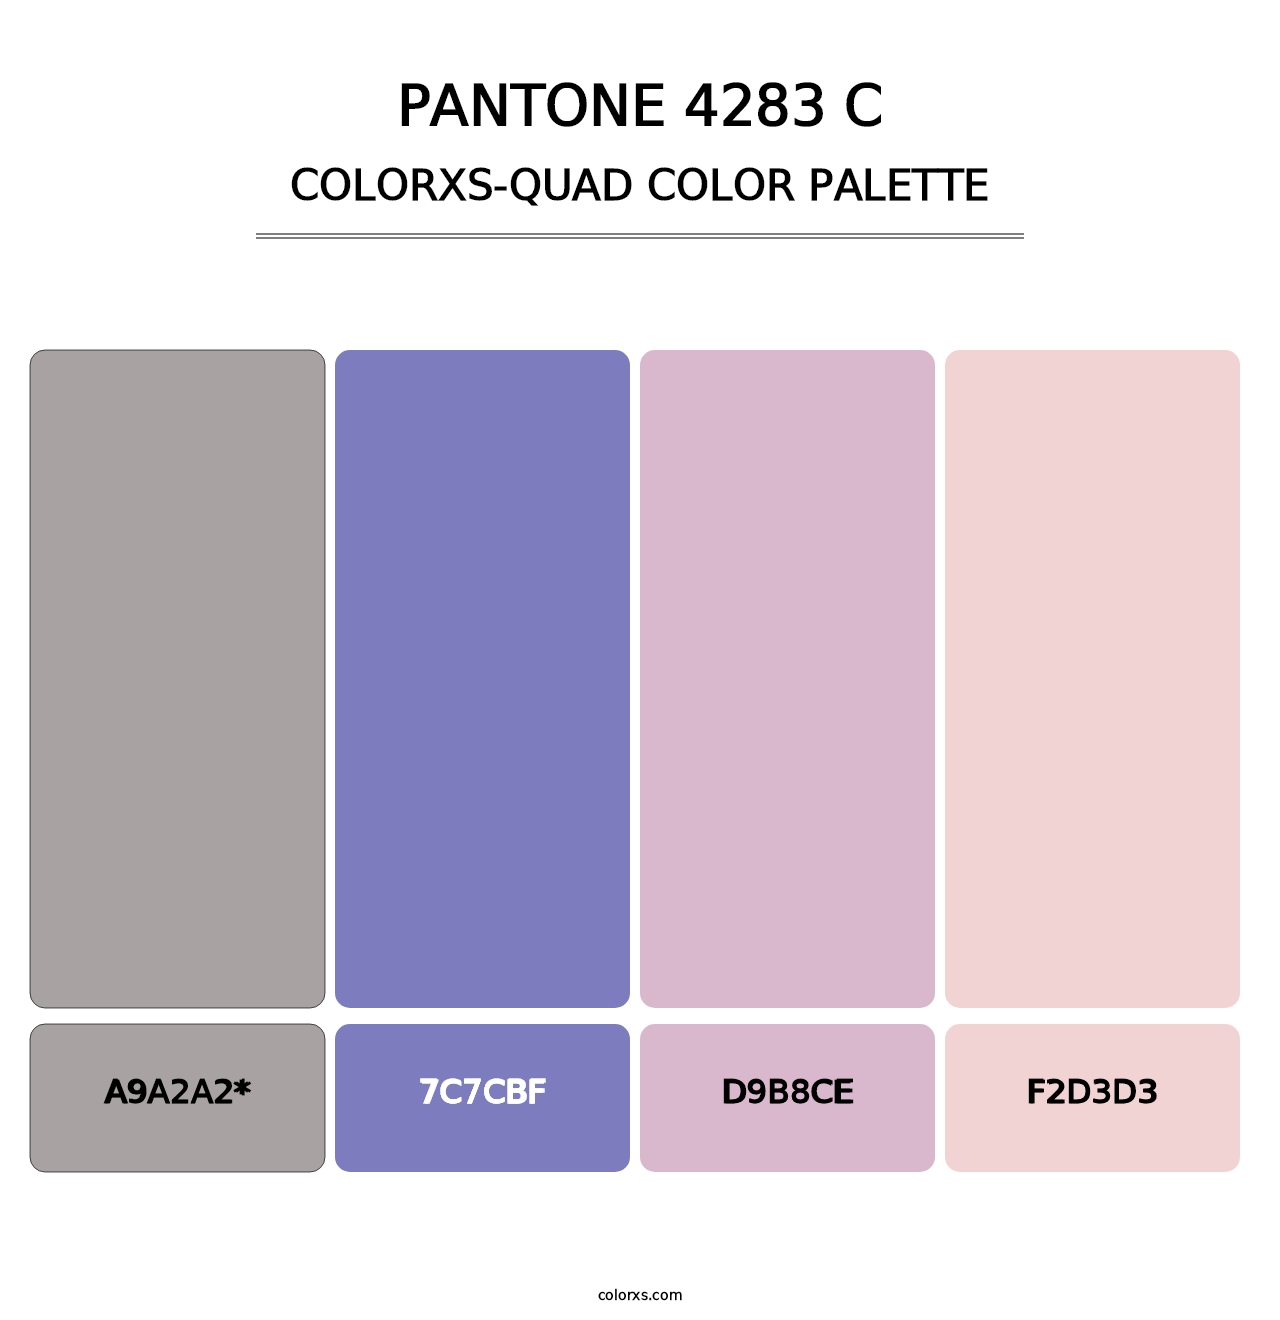 PANTONE 4283 C - Colorxs Quad Palette